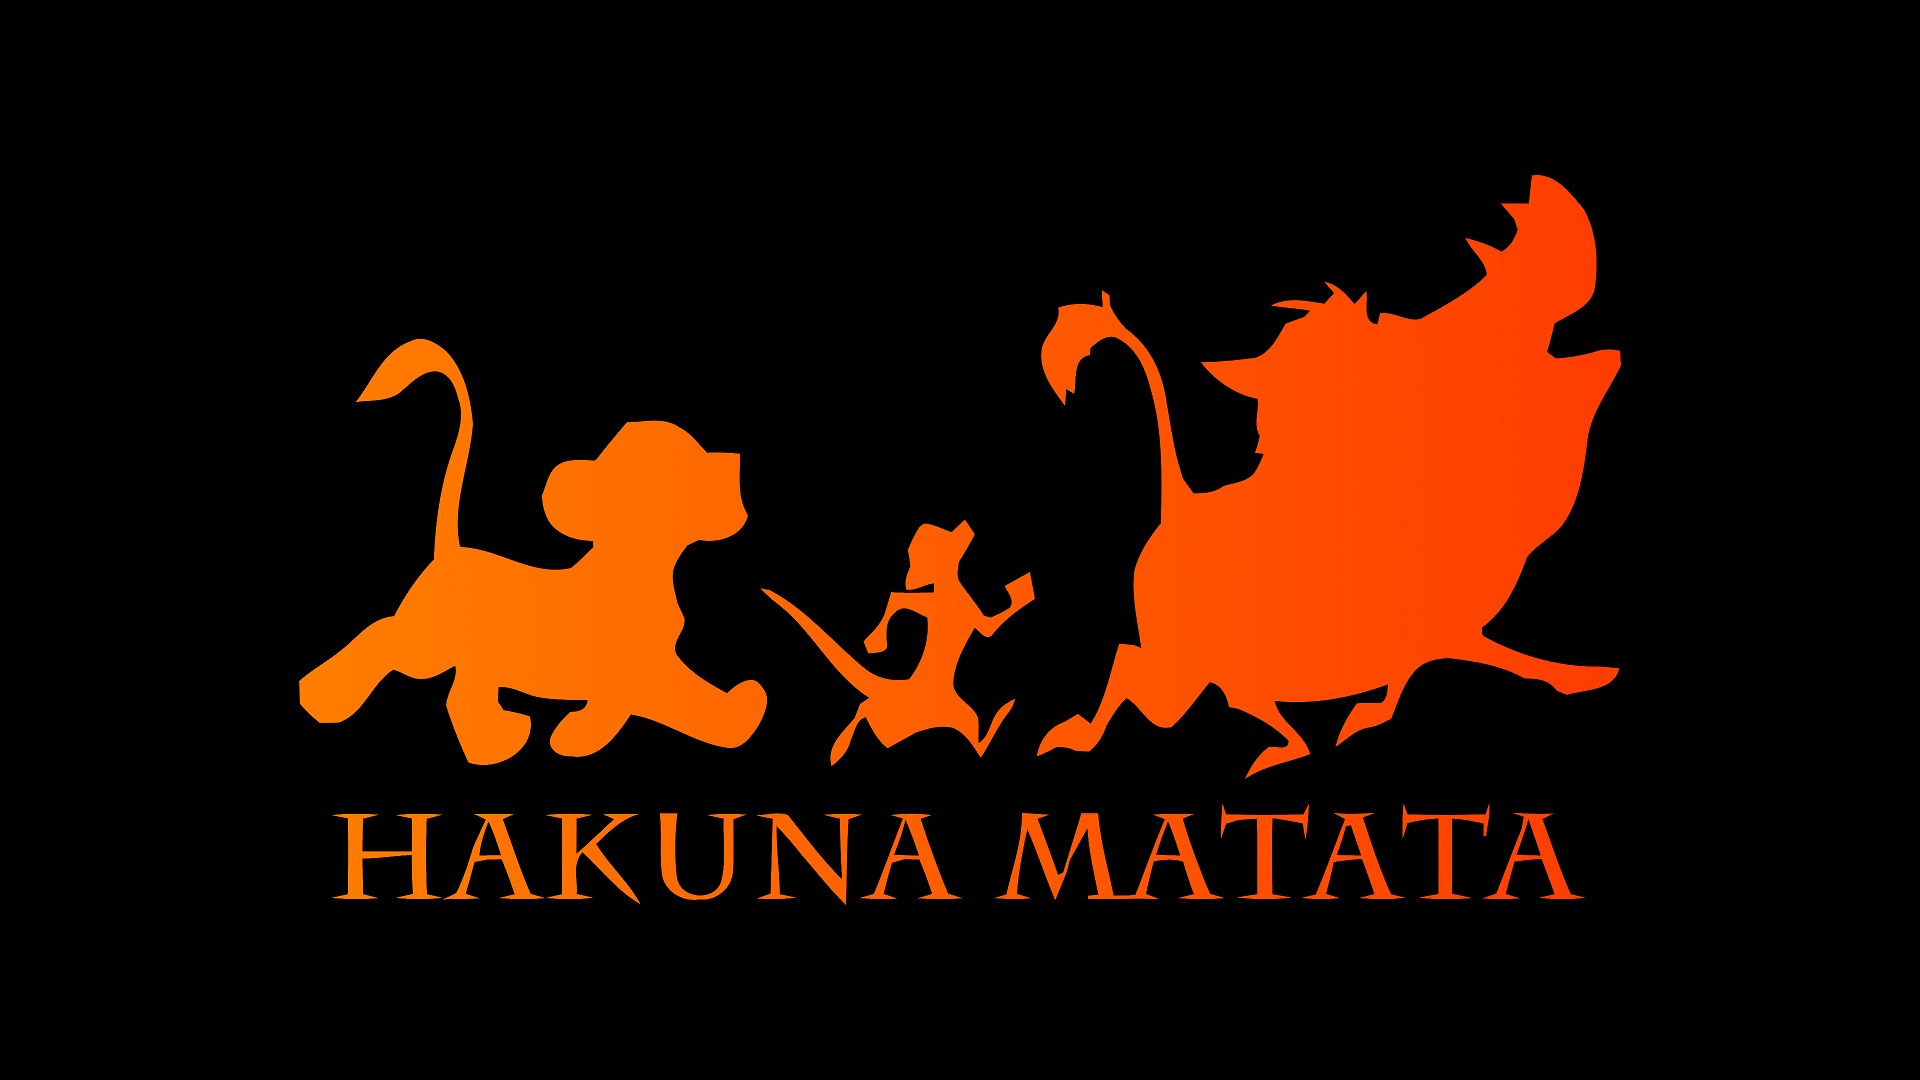 La Disney potrebbe essere querelata per il marchio di Hakuna Matata